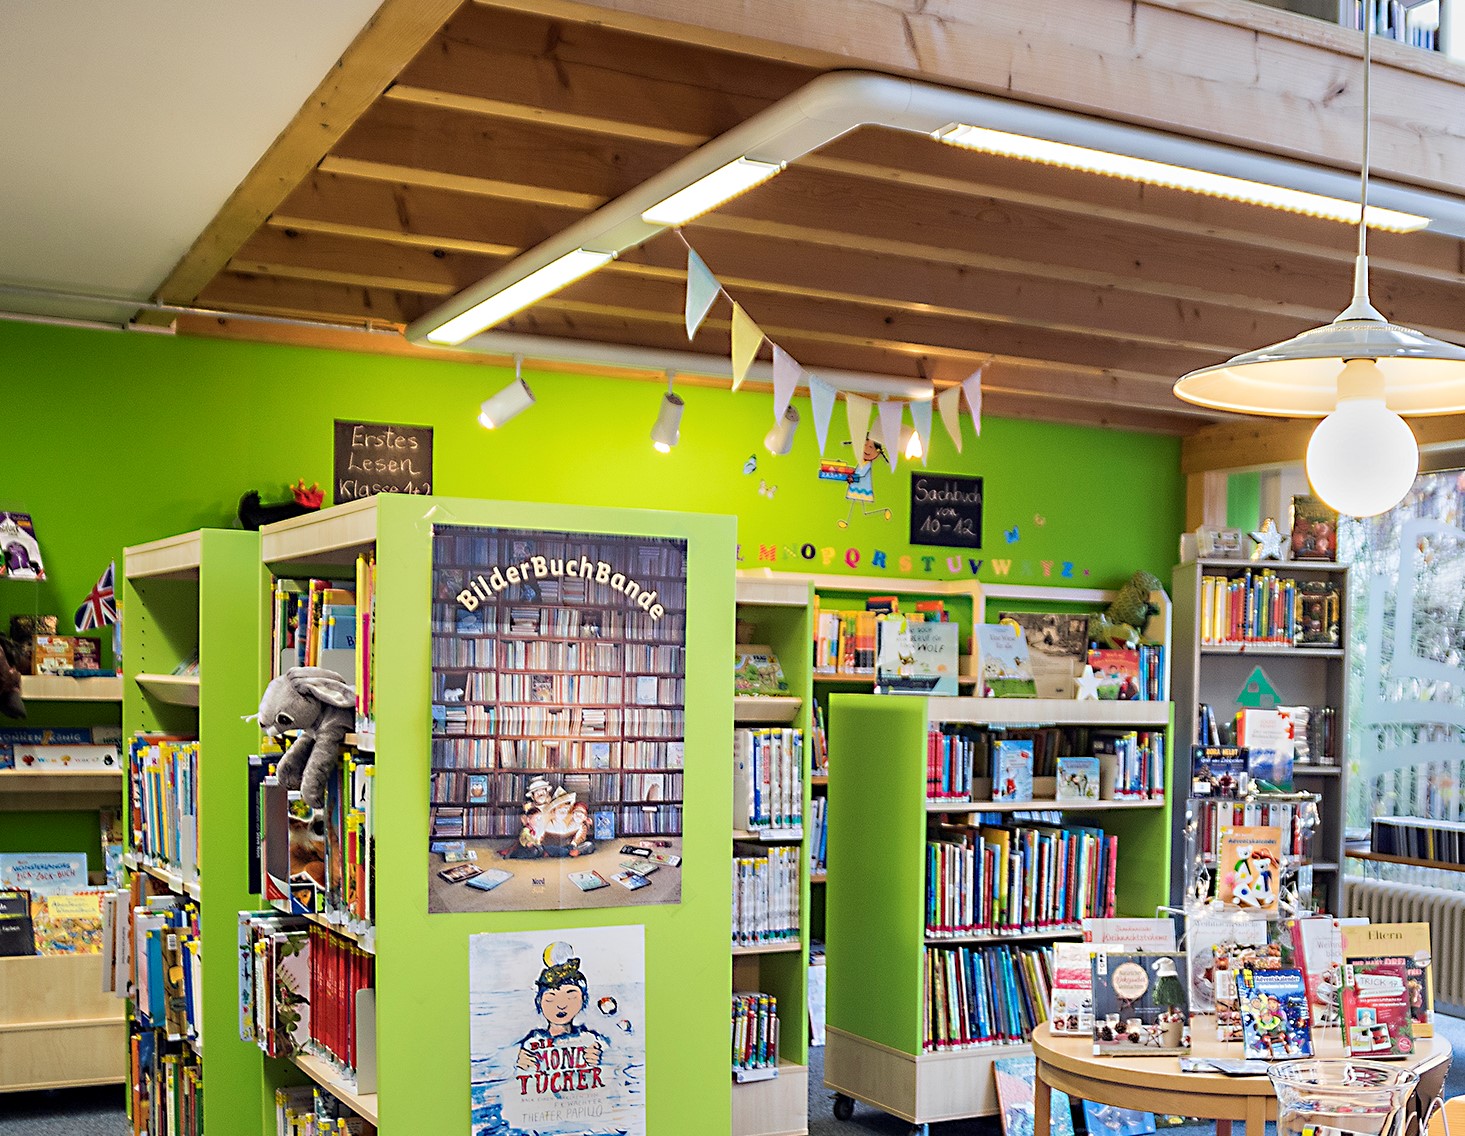 Das Bild zeigt einen Blick in die Bücherei. Die Wände sind grün gestrichen. Grüne Regale stehen vor der Wand und auch als Raumteiler. An einem Regal hängen Poster und die Regale sind vollbestückt mit Büchern. Auf dem Bild sieht man auf der rechten Seite einen runden Tisch, ebenfalls mit Büchern bedeckt. Von der Decke hängen Girlanden sowie eine weiße Schirmlampe herunter.